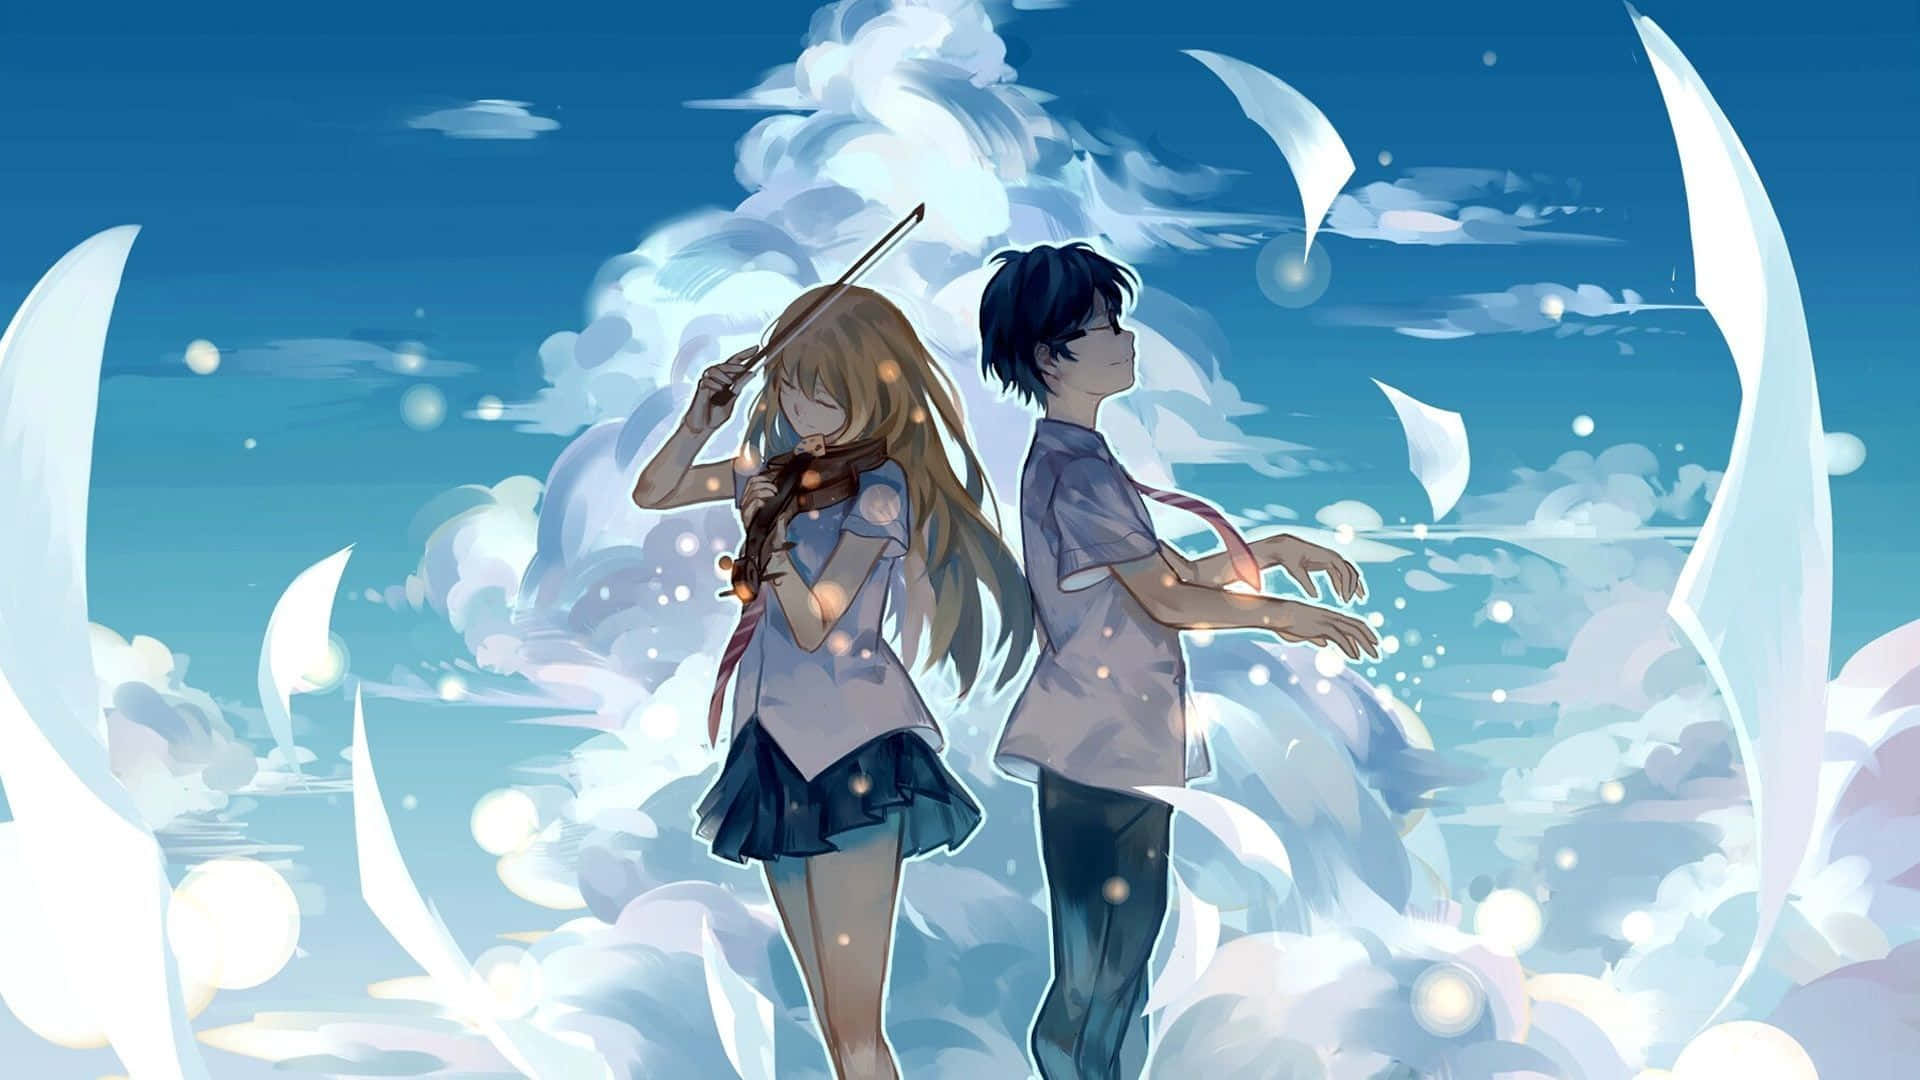 Blue Anime Aesthetic Desktop Wallpaper for FREE